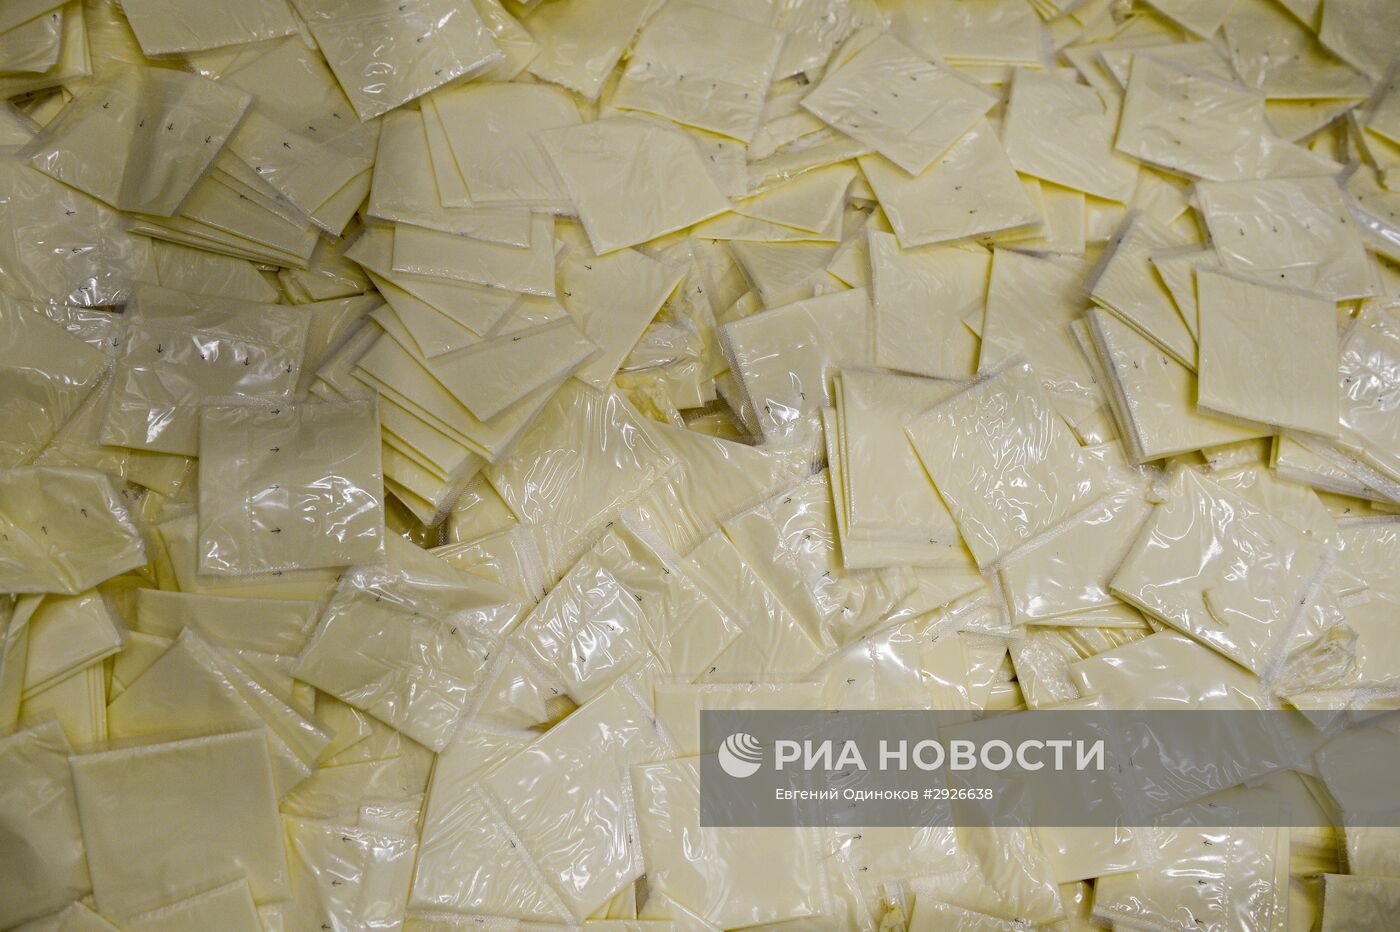 Производство в России плавленого сыра Viola